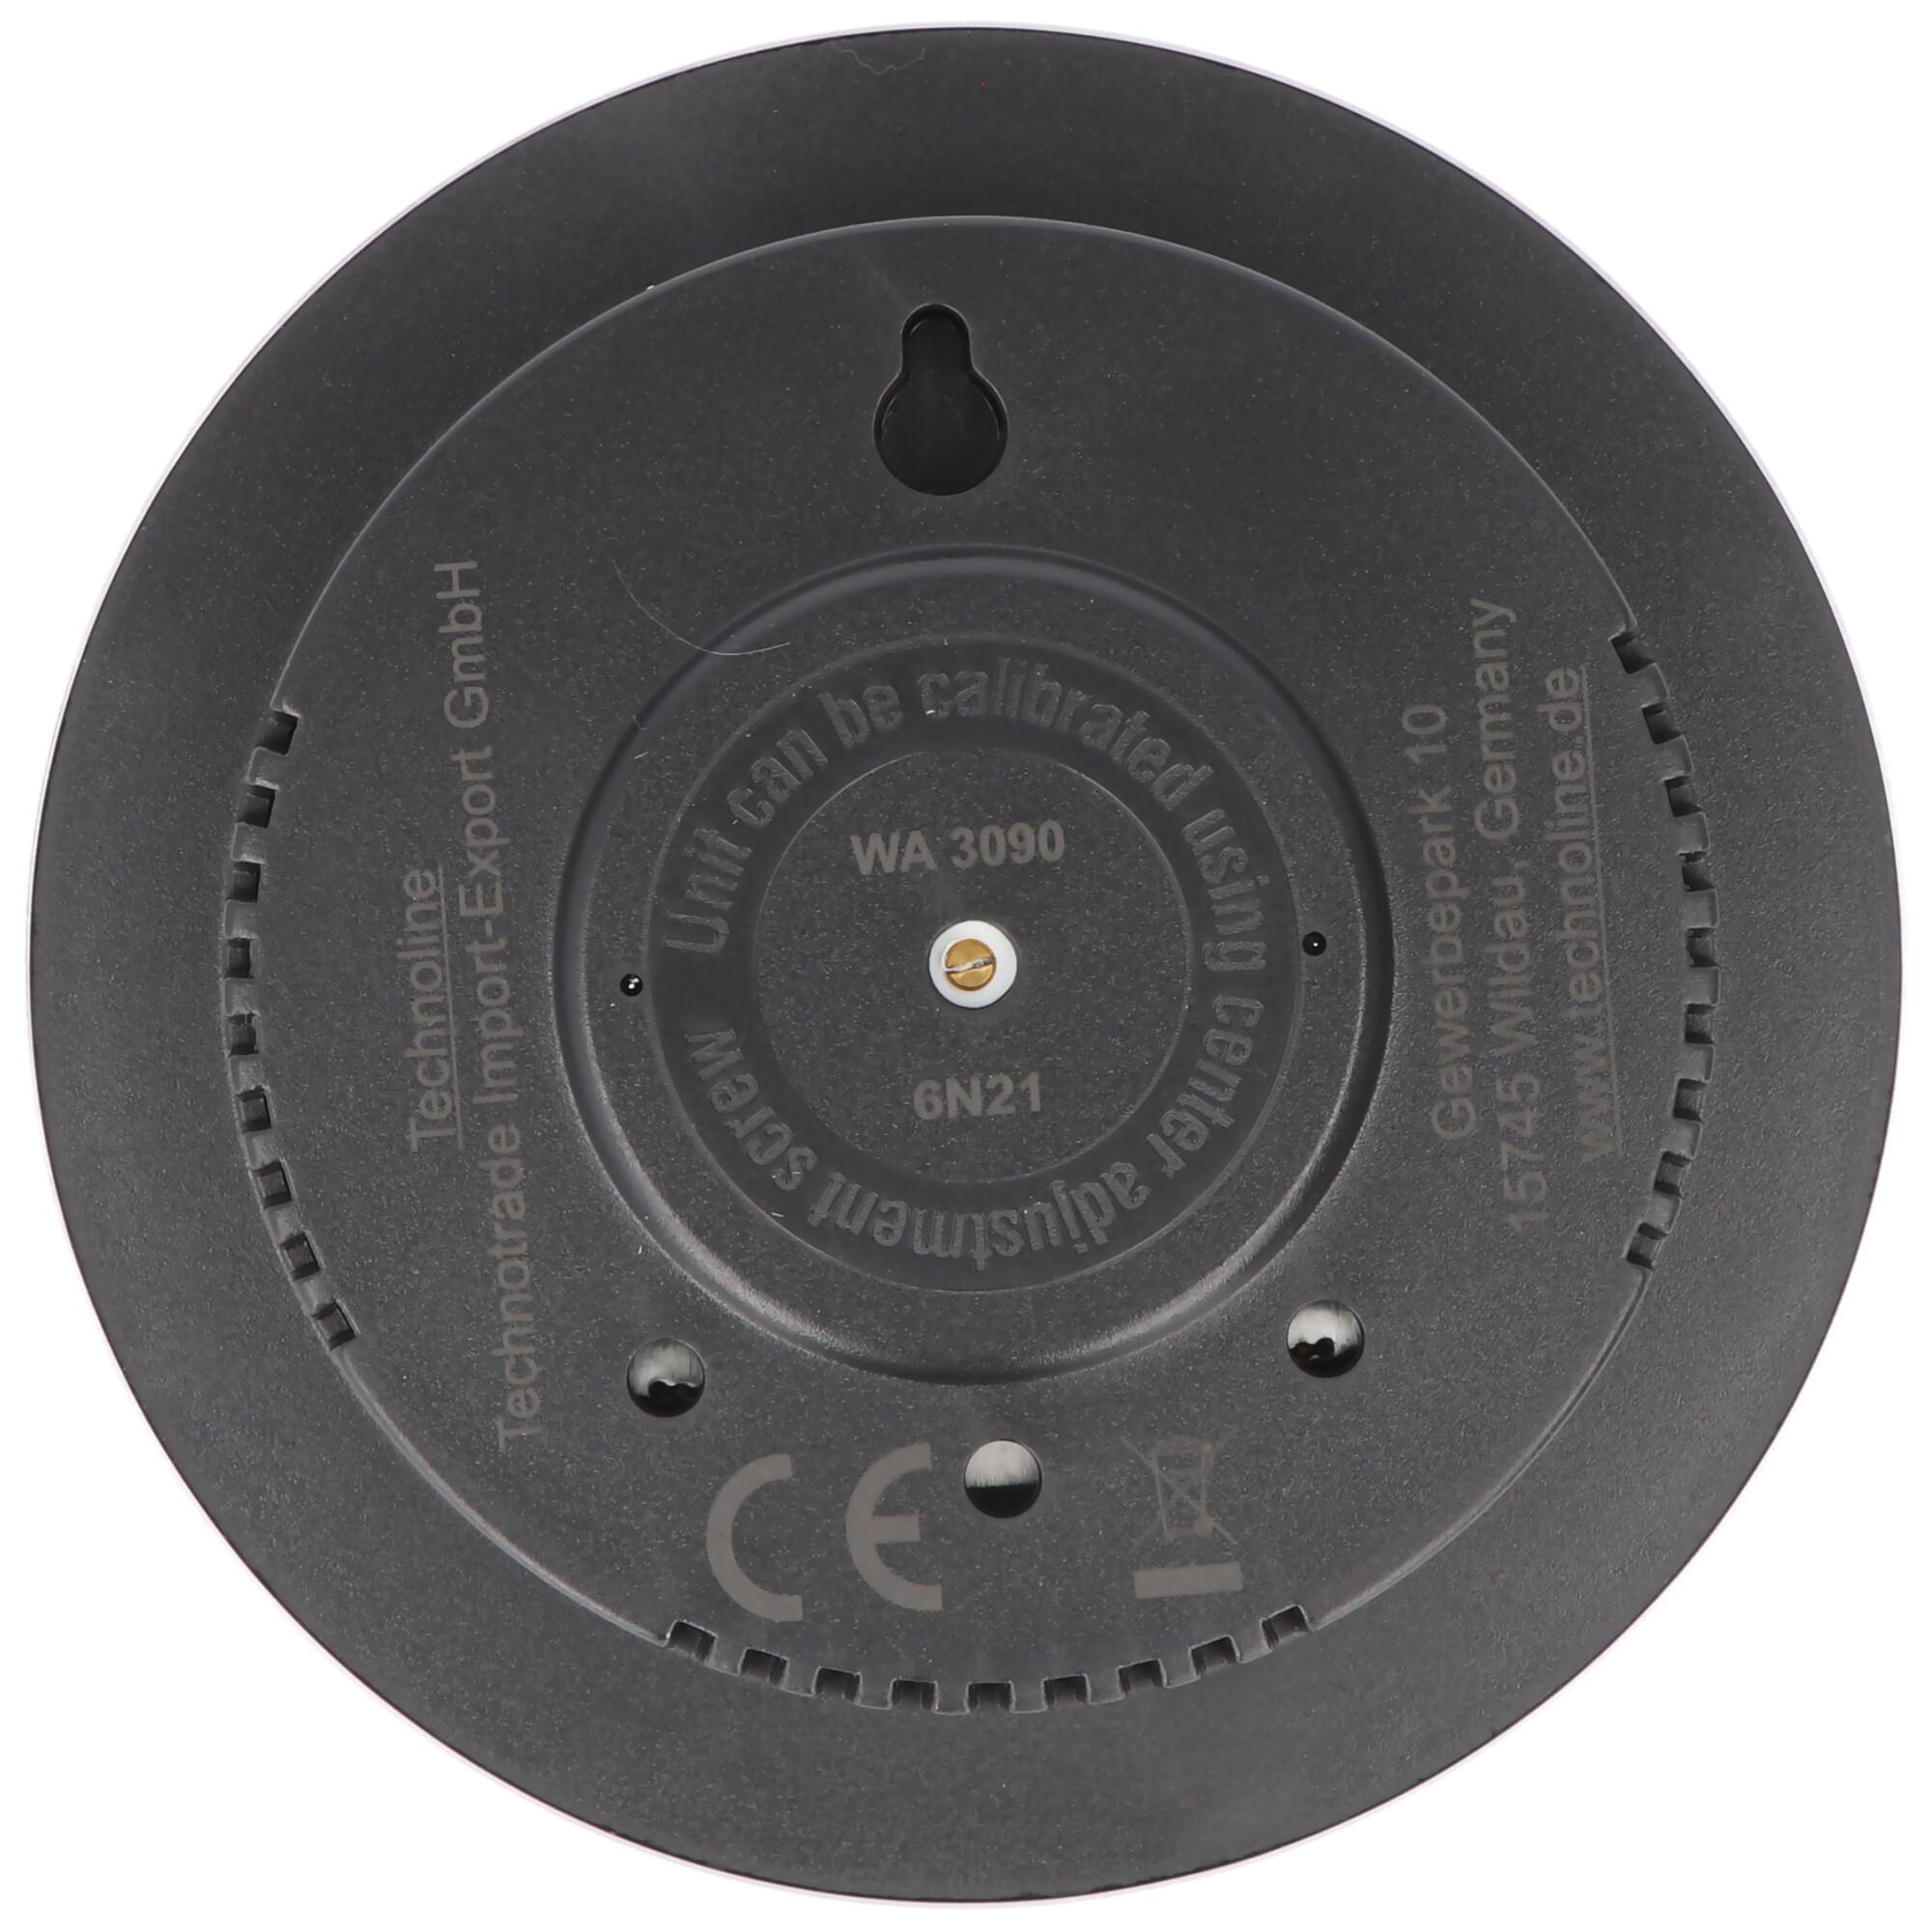 Technoline WA 3090 rundes BaroMeter mit Thermo-HygroMeter im Vintage-Design